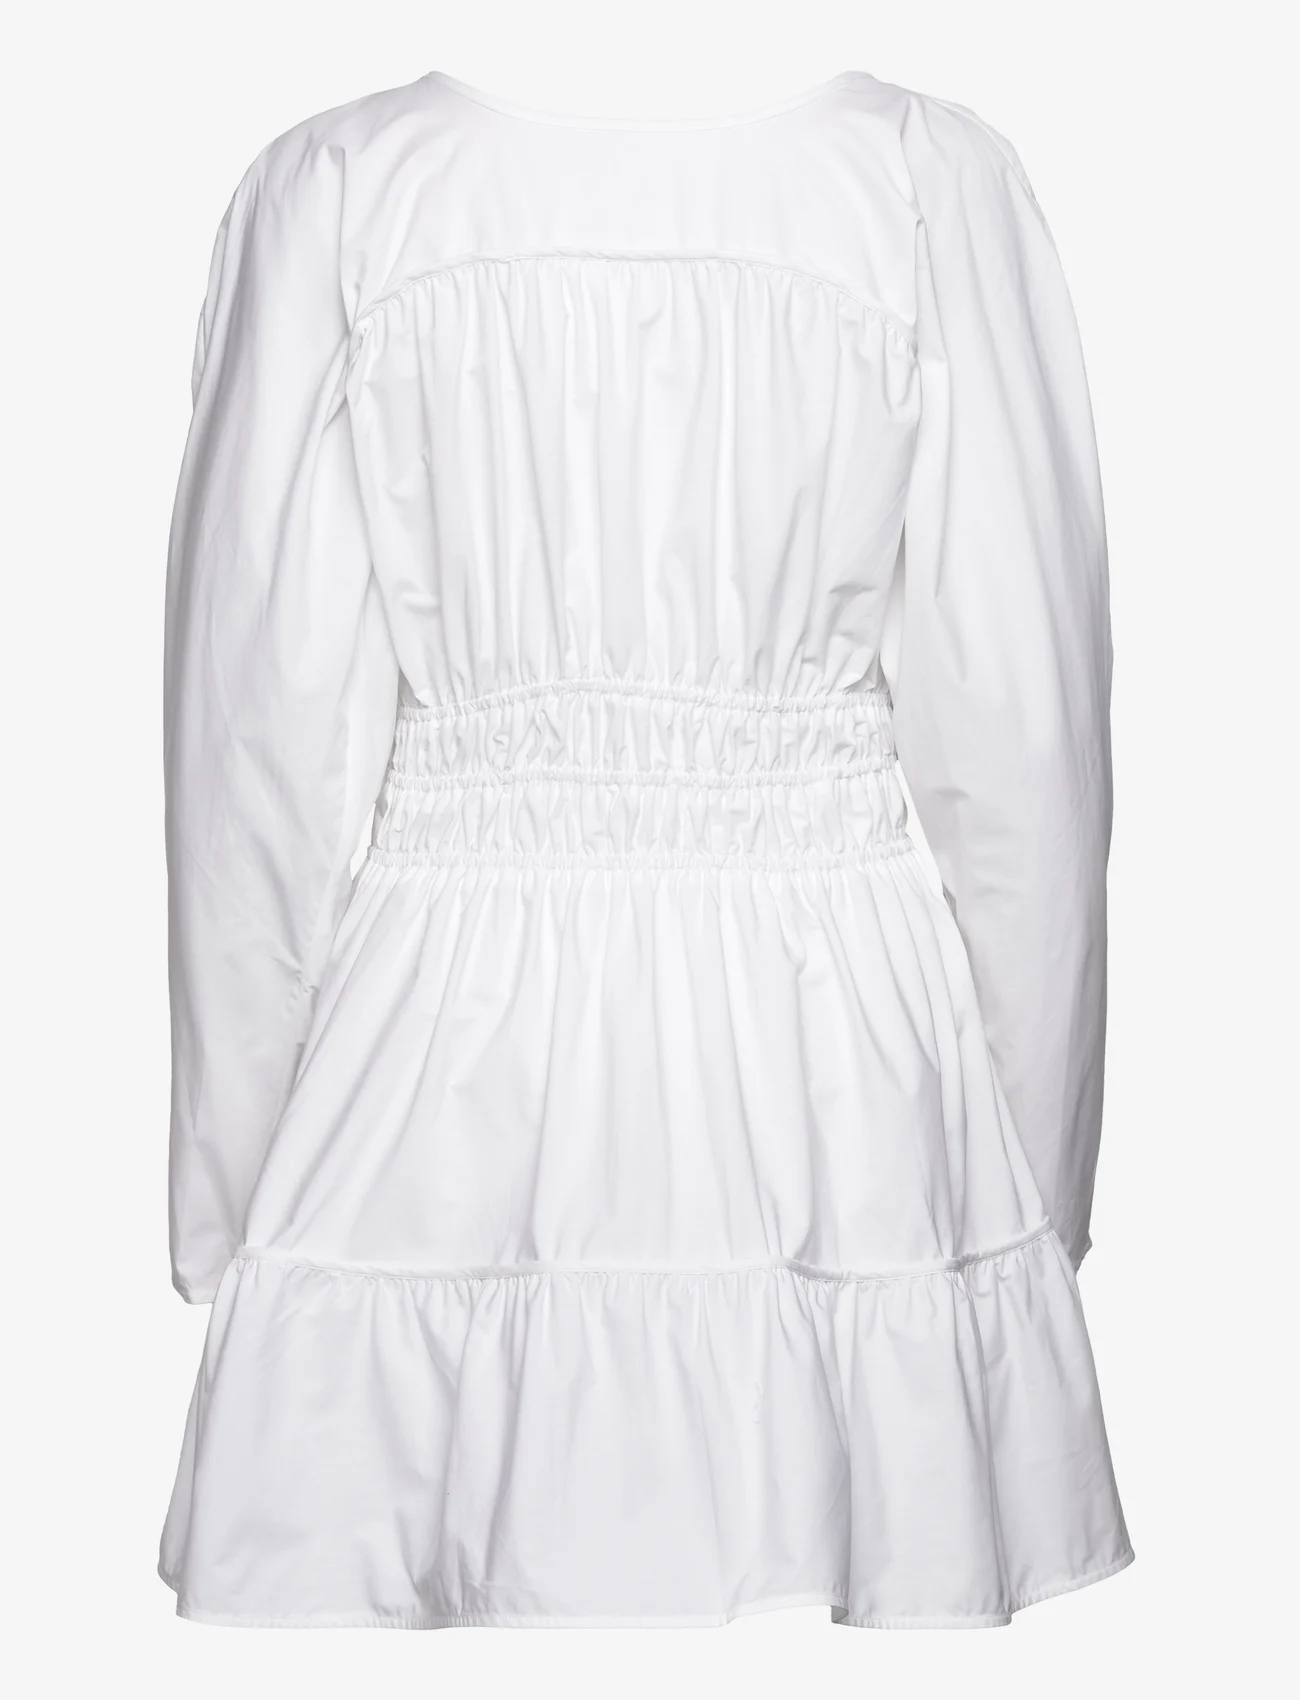 HOLZWEILER - Liebe Dress - shirt dresses - white - 1